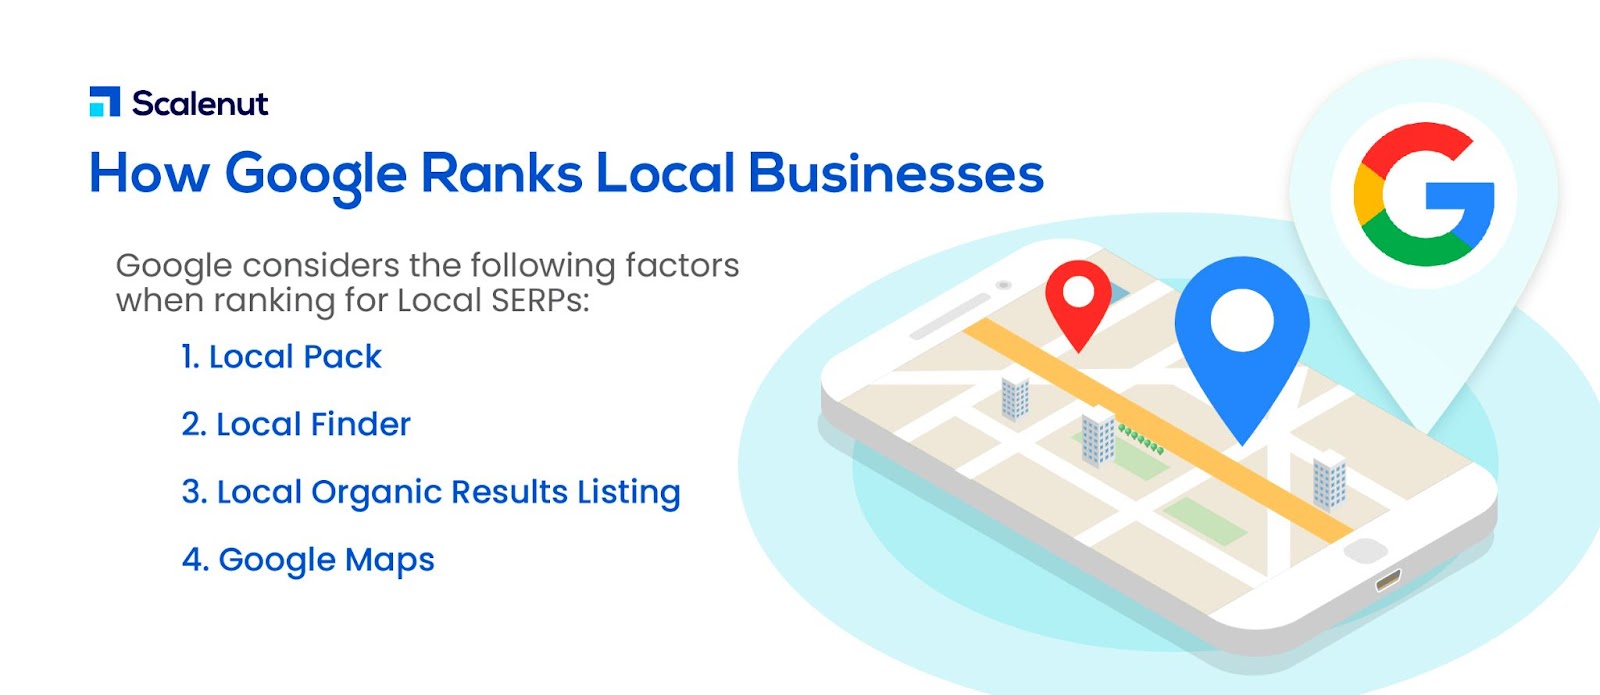 Wie bewertet Google lokale Unternehmen?